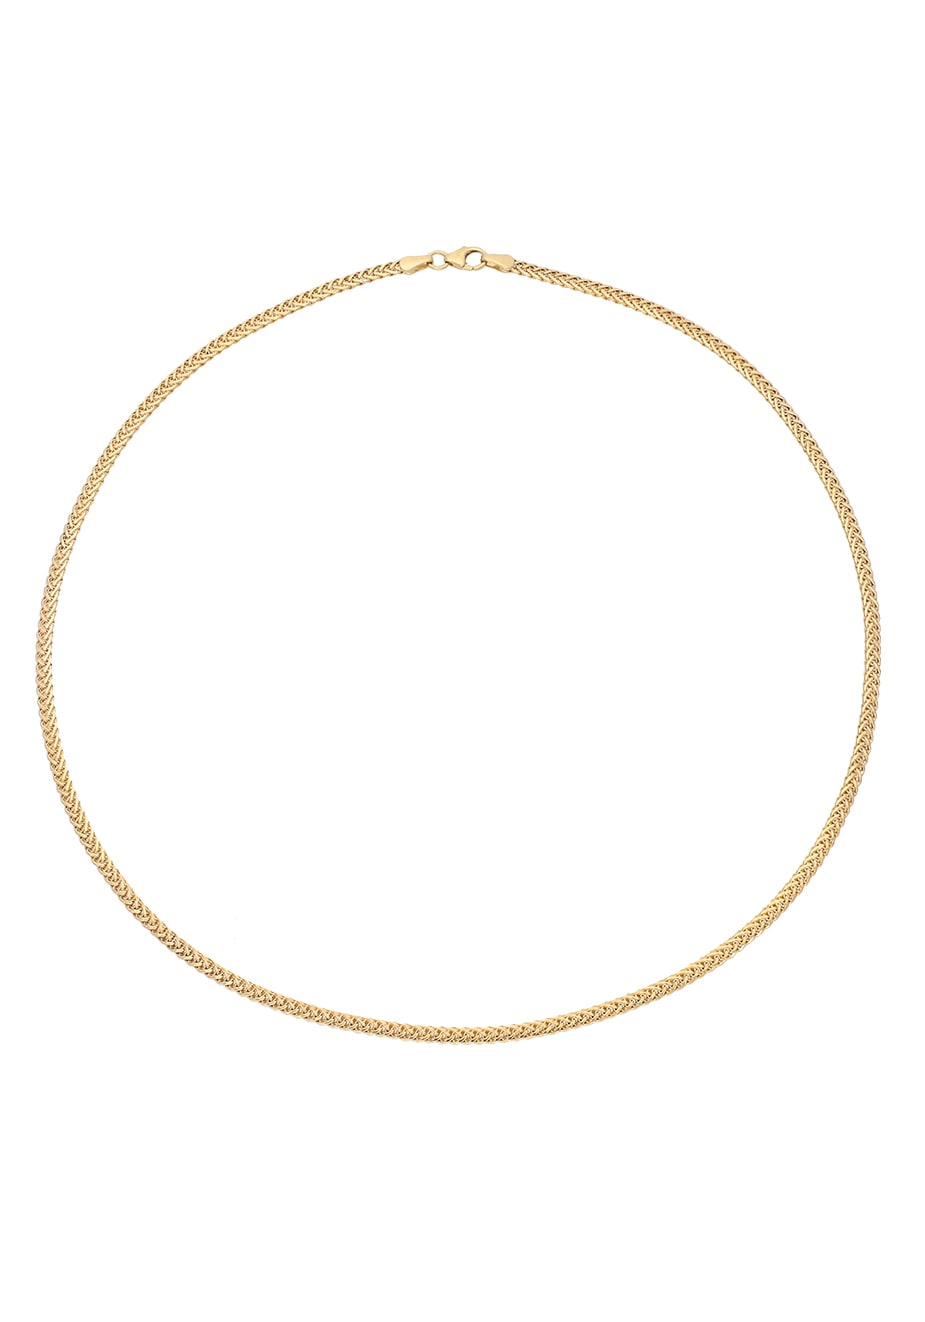 mm, Zopfkettengliederung, in Firetti Geschenk, kaufen online »Schmuck glänzend« 2,8 Goldkette zeitlos